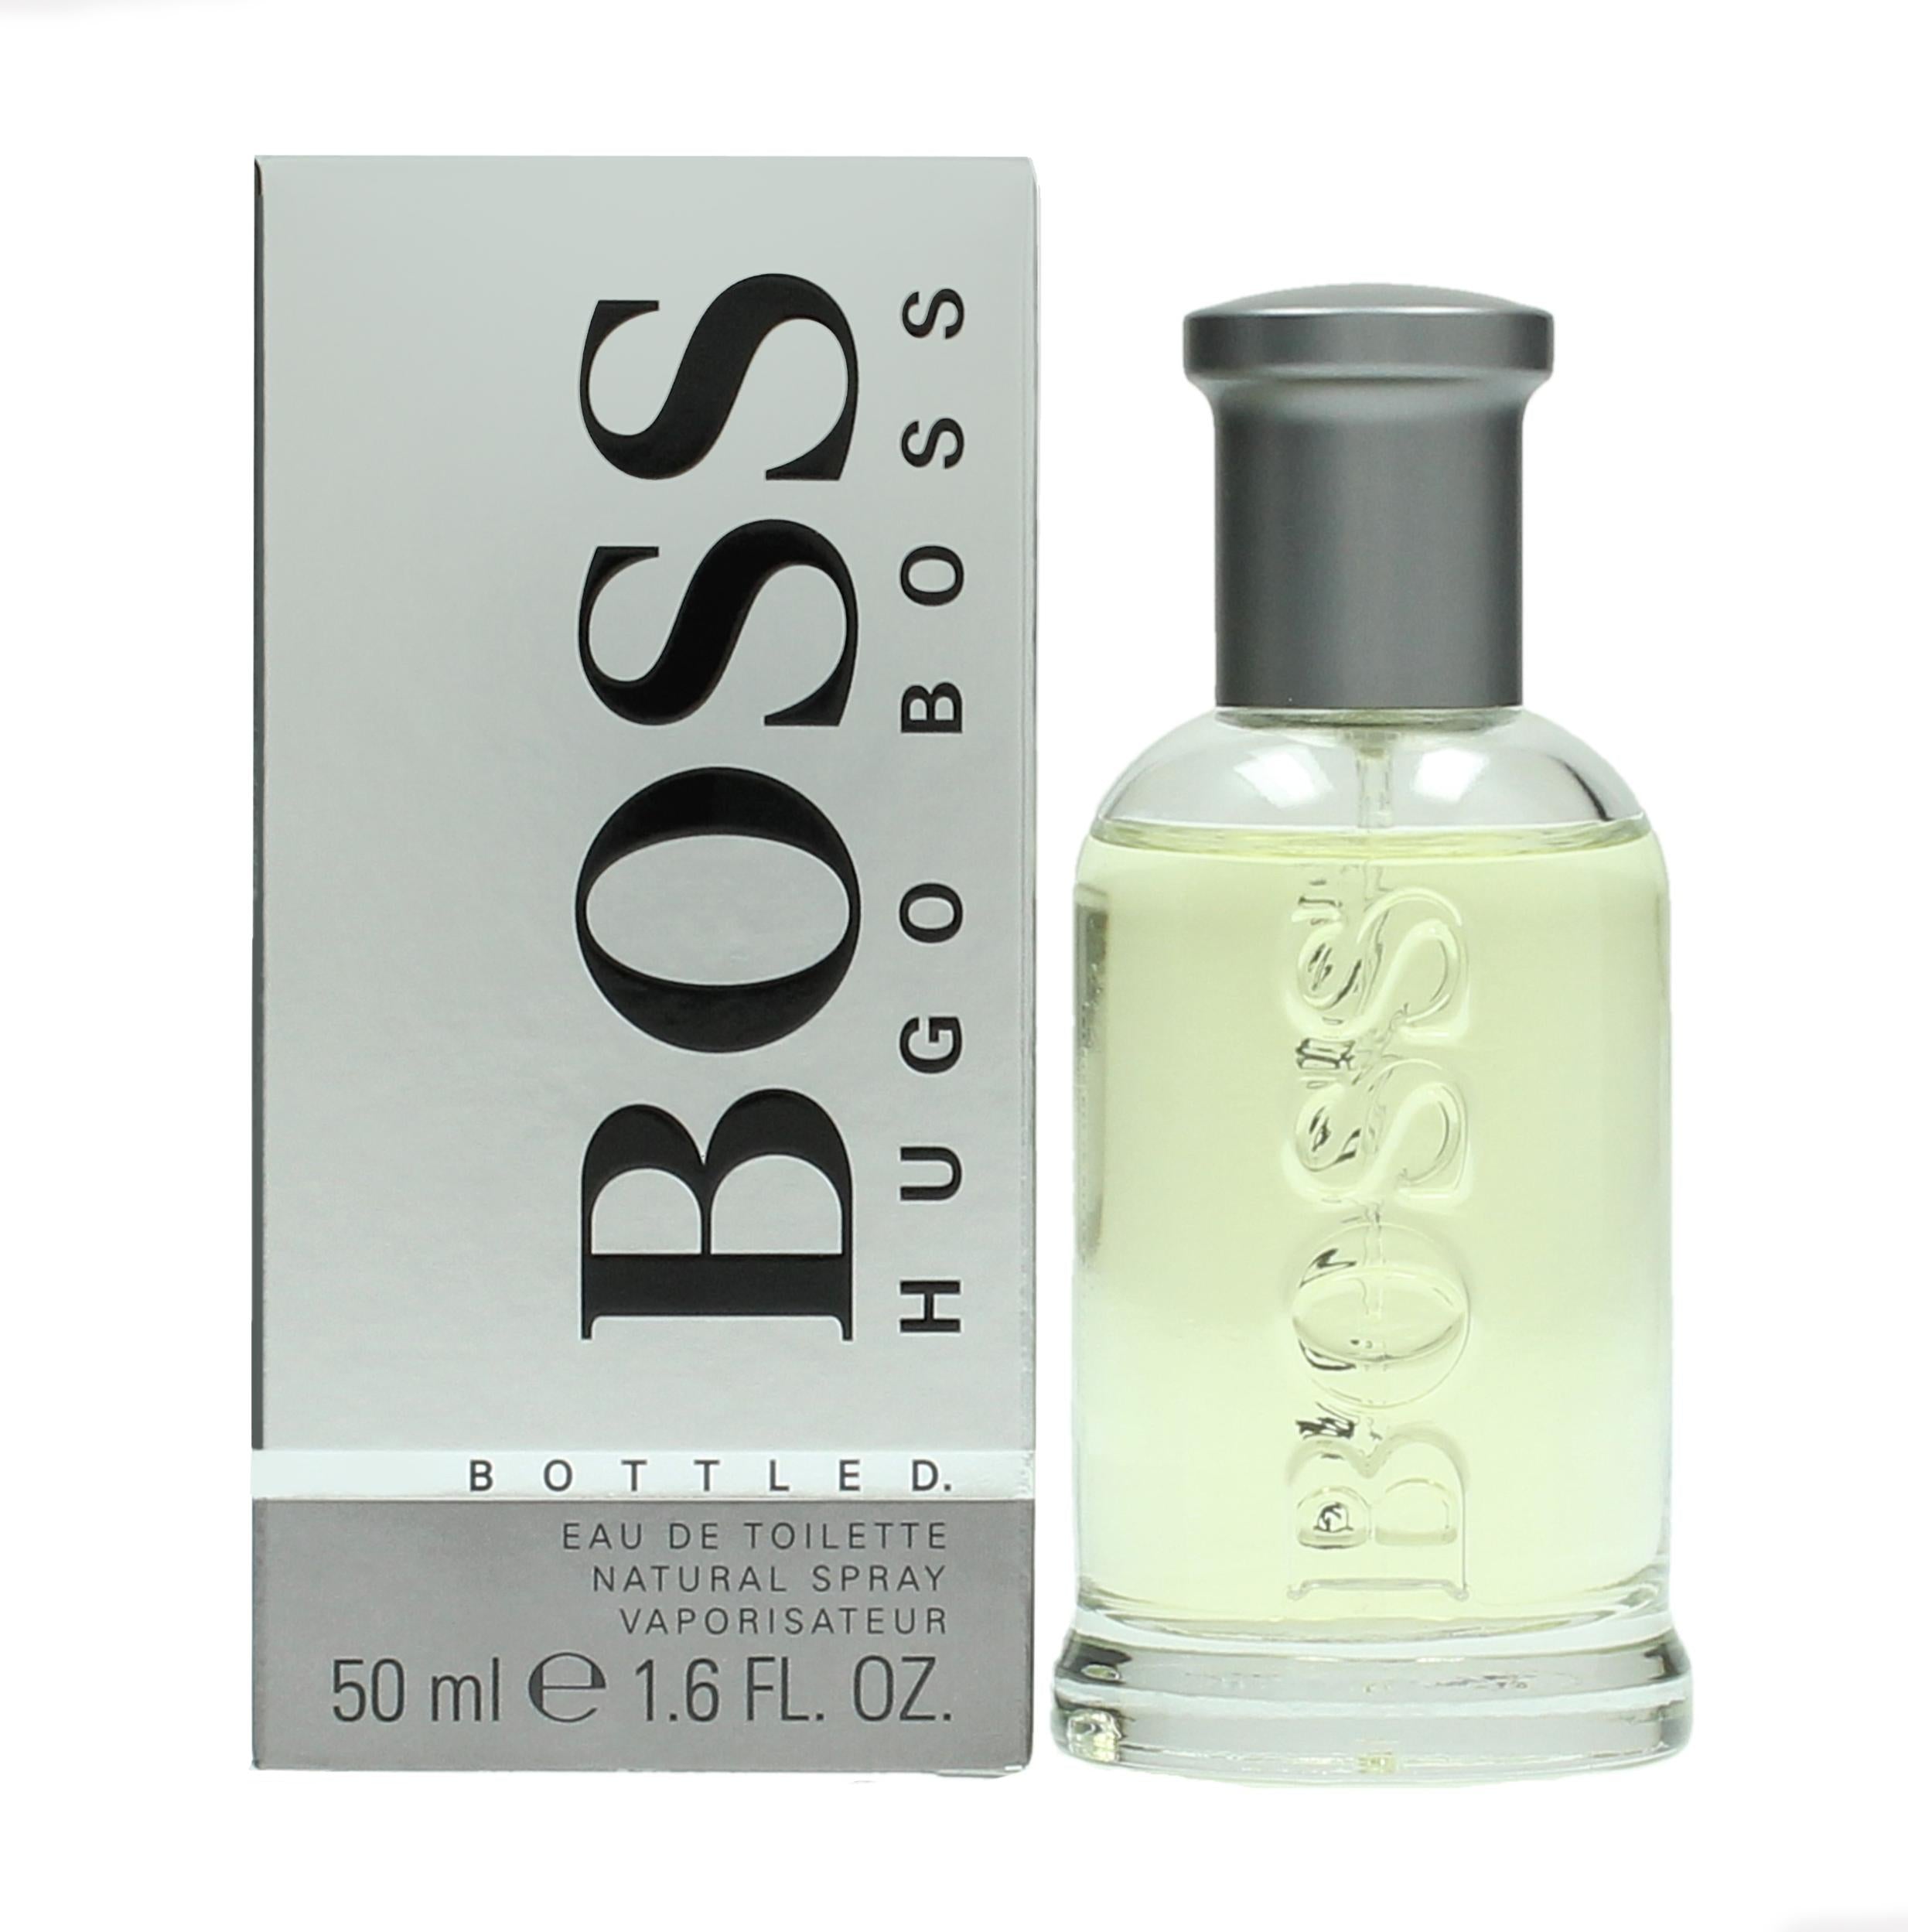 View Hugo Boss Boss Bottled Eau de Toilette 50ml Spray information